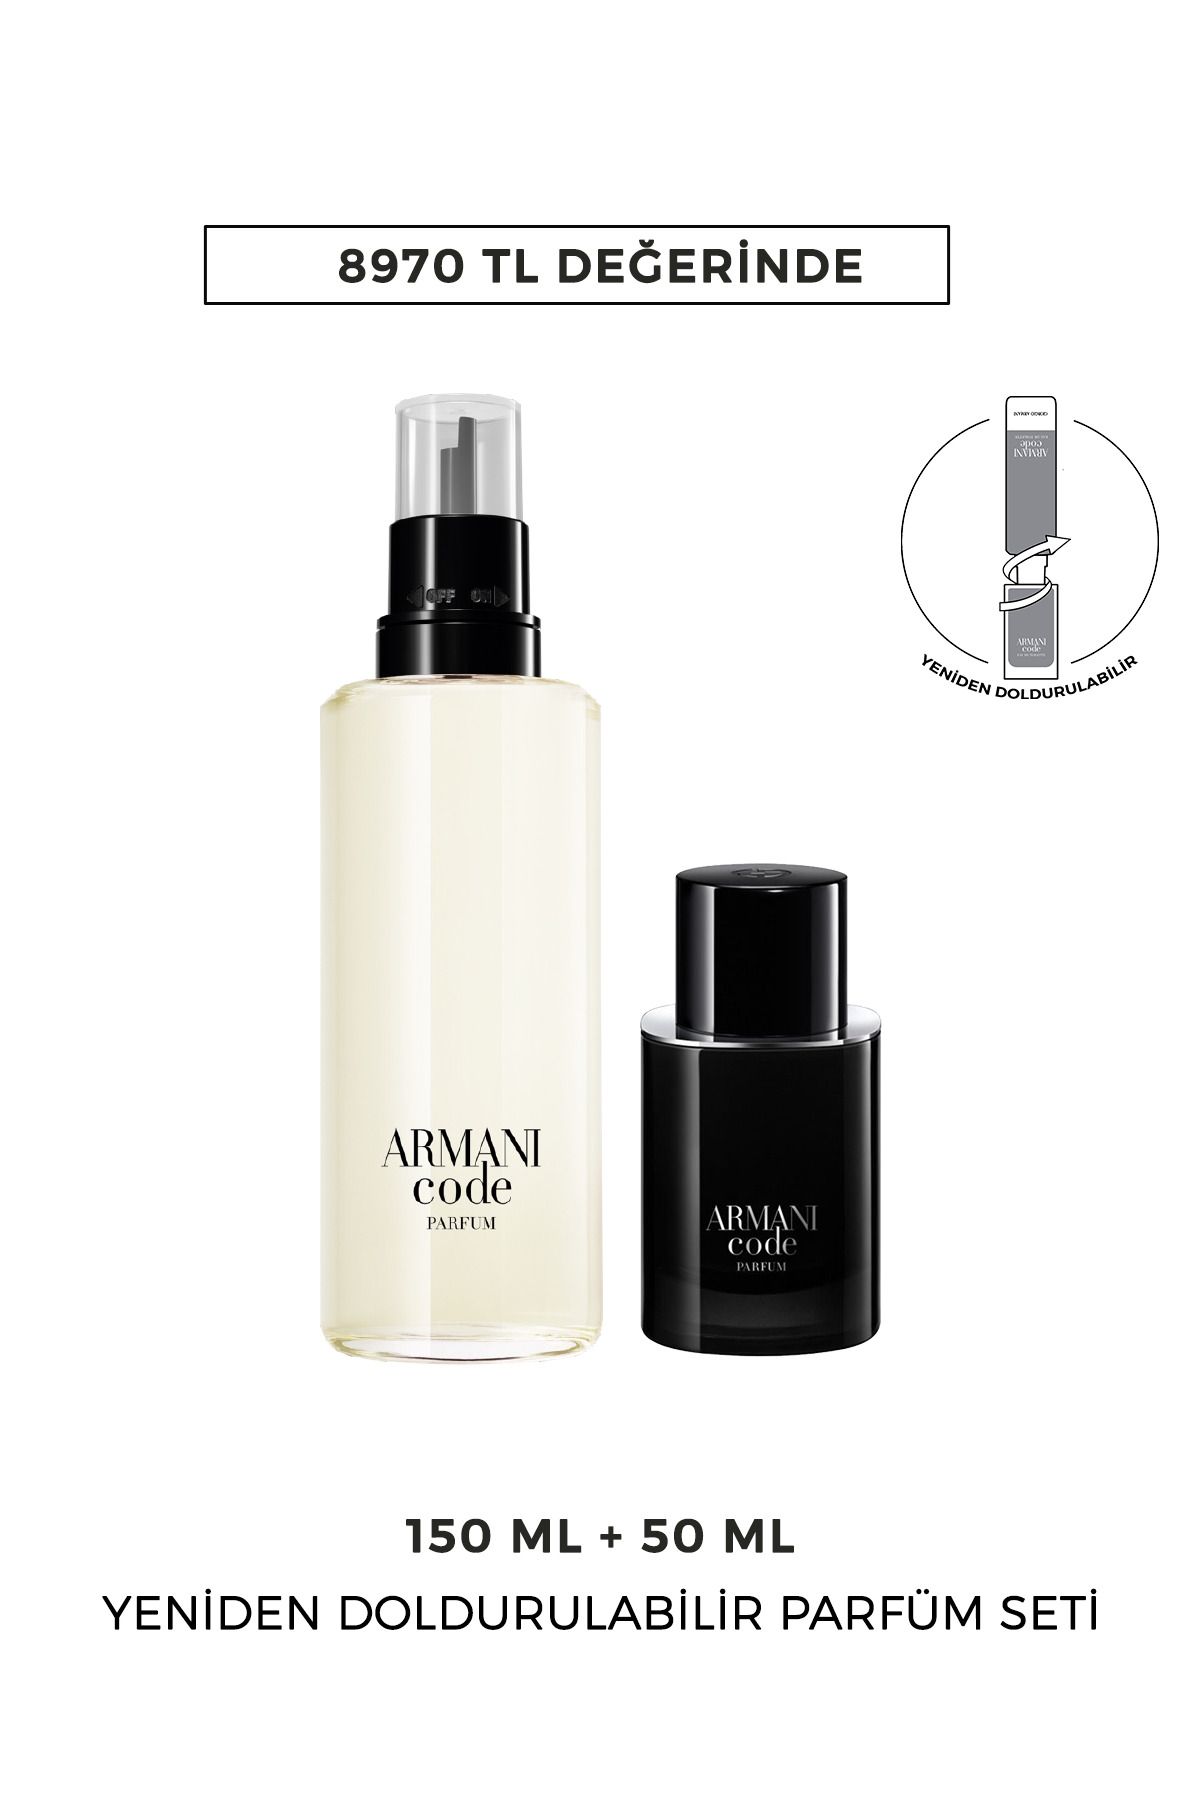 Giorgio Armani Code Le Parfum 50 Ml & 150 Ml Yeniden Doldurulabilir Erkek Parfüm Seti 7829999999141